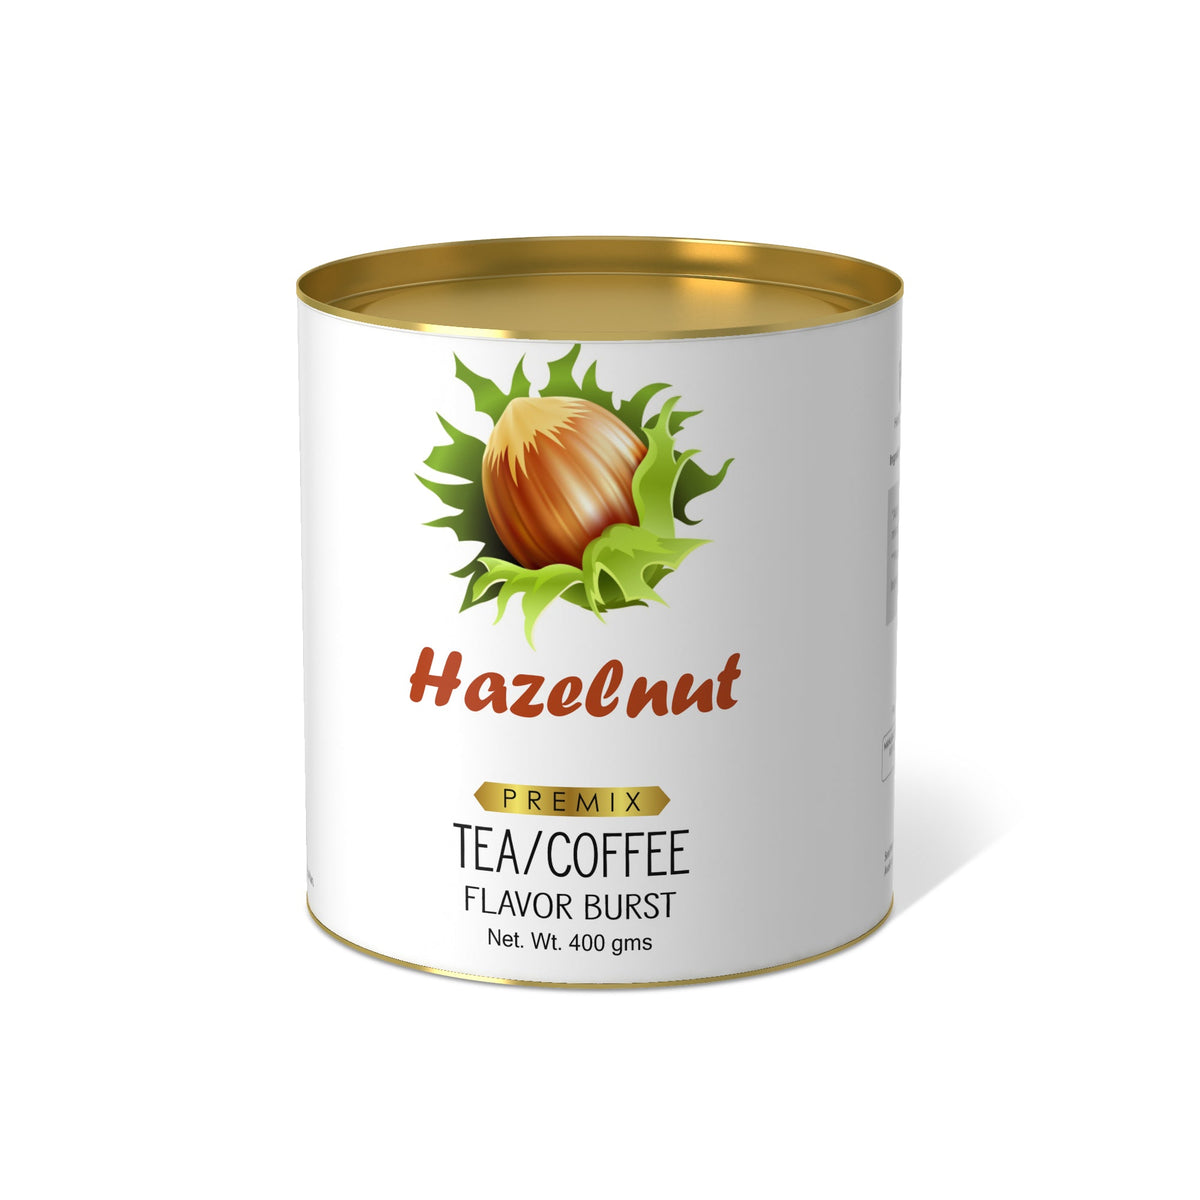 Hazelnut Flavor Burst